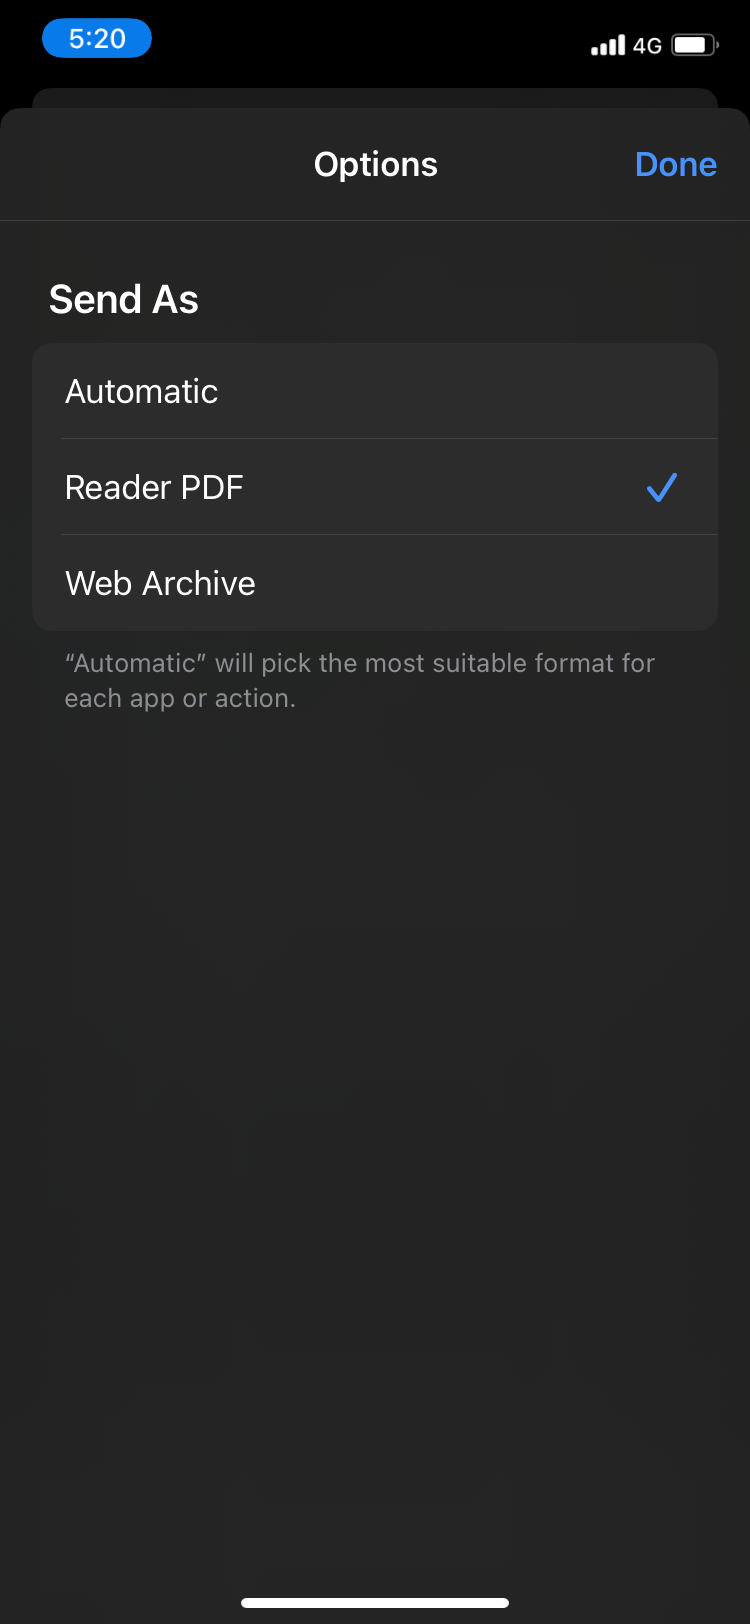 reader PDF